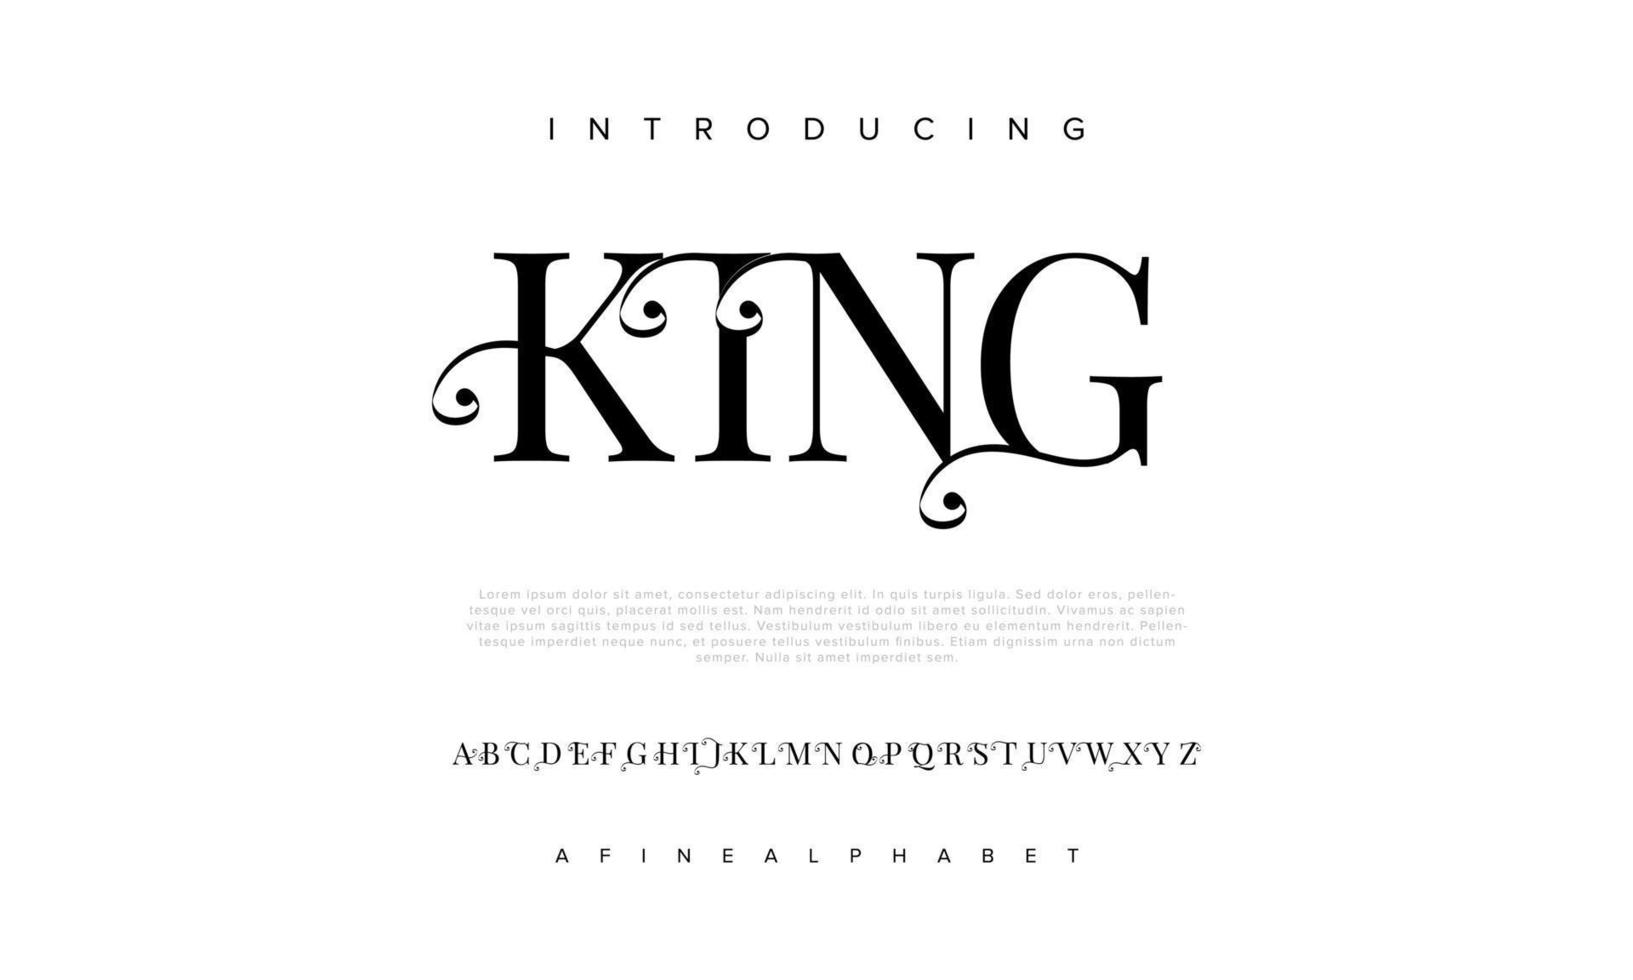 koning abstract mode doopvont alfabet. minimaal modern stedelijk fonts voor logo, merk enz. typografie lettertype hoofdletters kleine letters en nummer. vector illustratie